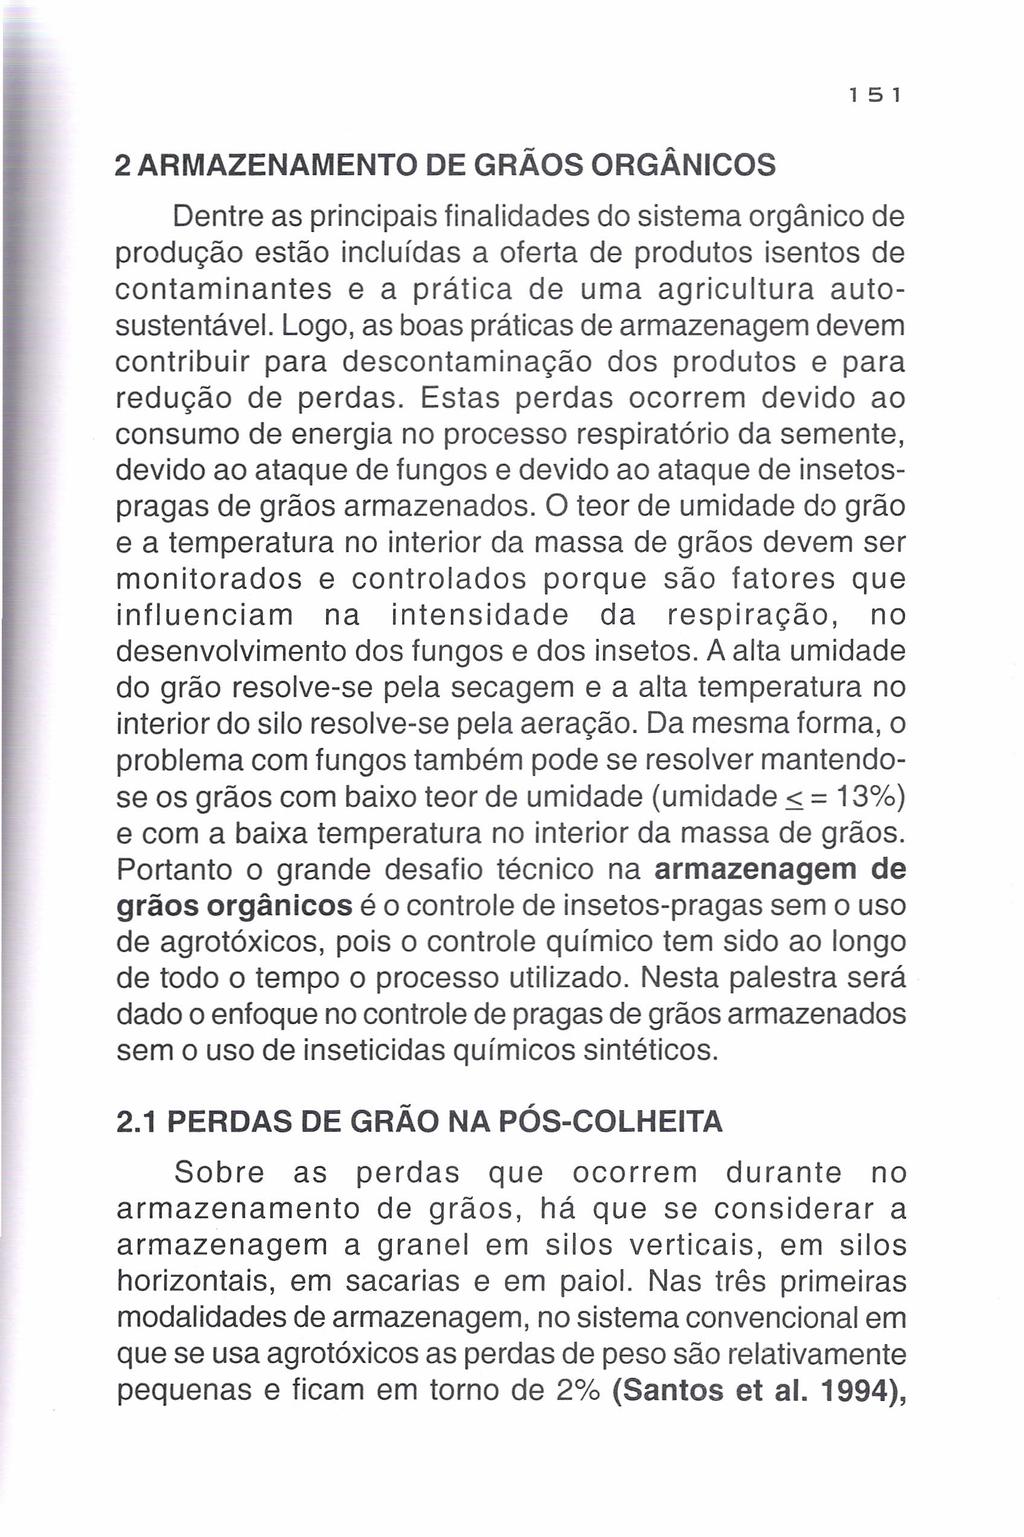 1 51 2 ARMAZENAMENTO DE GRÃOS ORGÂNICOS Dentre as principais finalidades do sistema orgânico de produção estão incluídas a oferta de produtos isentos de contaminantes e a prática de uma agricultura